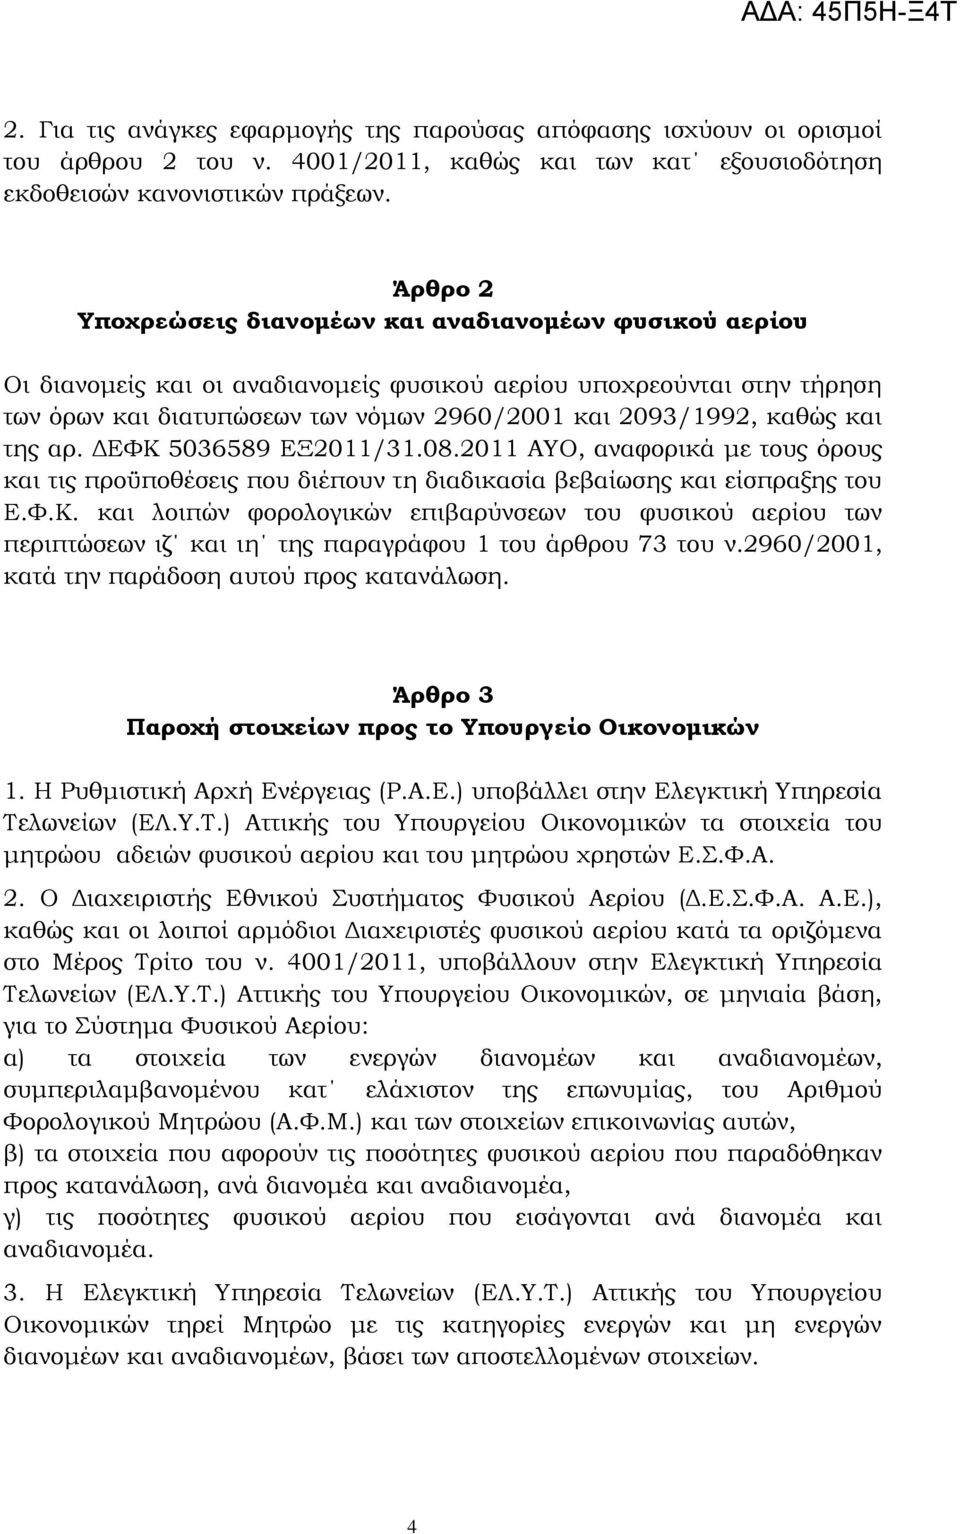 καθώς και της αρ. ΔΕΥΚ 5036589 ΕΞ2011/31.08.2011 ΑΤΟ, αναφορικά με τους όρους και τις προϋποθέσεις που διέπουν τη διαδικασία βεβαίωσης και είσπραξης του Ε.Υ.Κ. και λοιπών φορολογικών επιβαρύνσεων του φυσικού αερίου των περιπτώσεων ιζ και ιη της παραγράφου 1 του άρθρου 73 του ν.